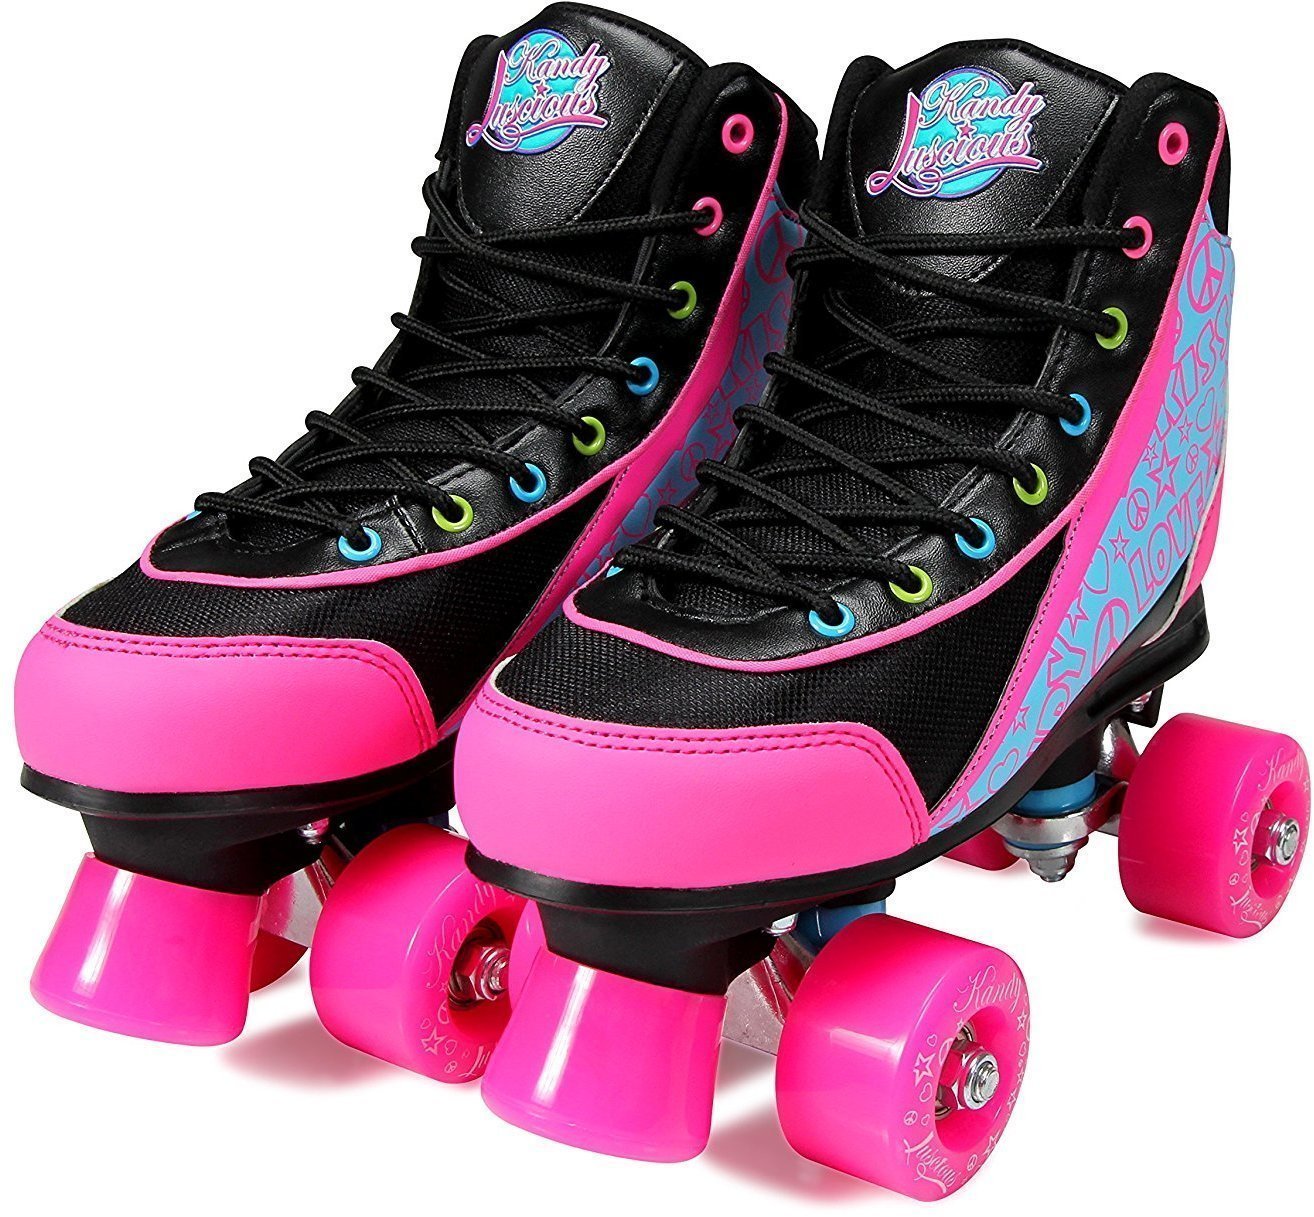 Patins em linha Luscious Skates Disco Diva 41 Black/Pink